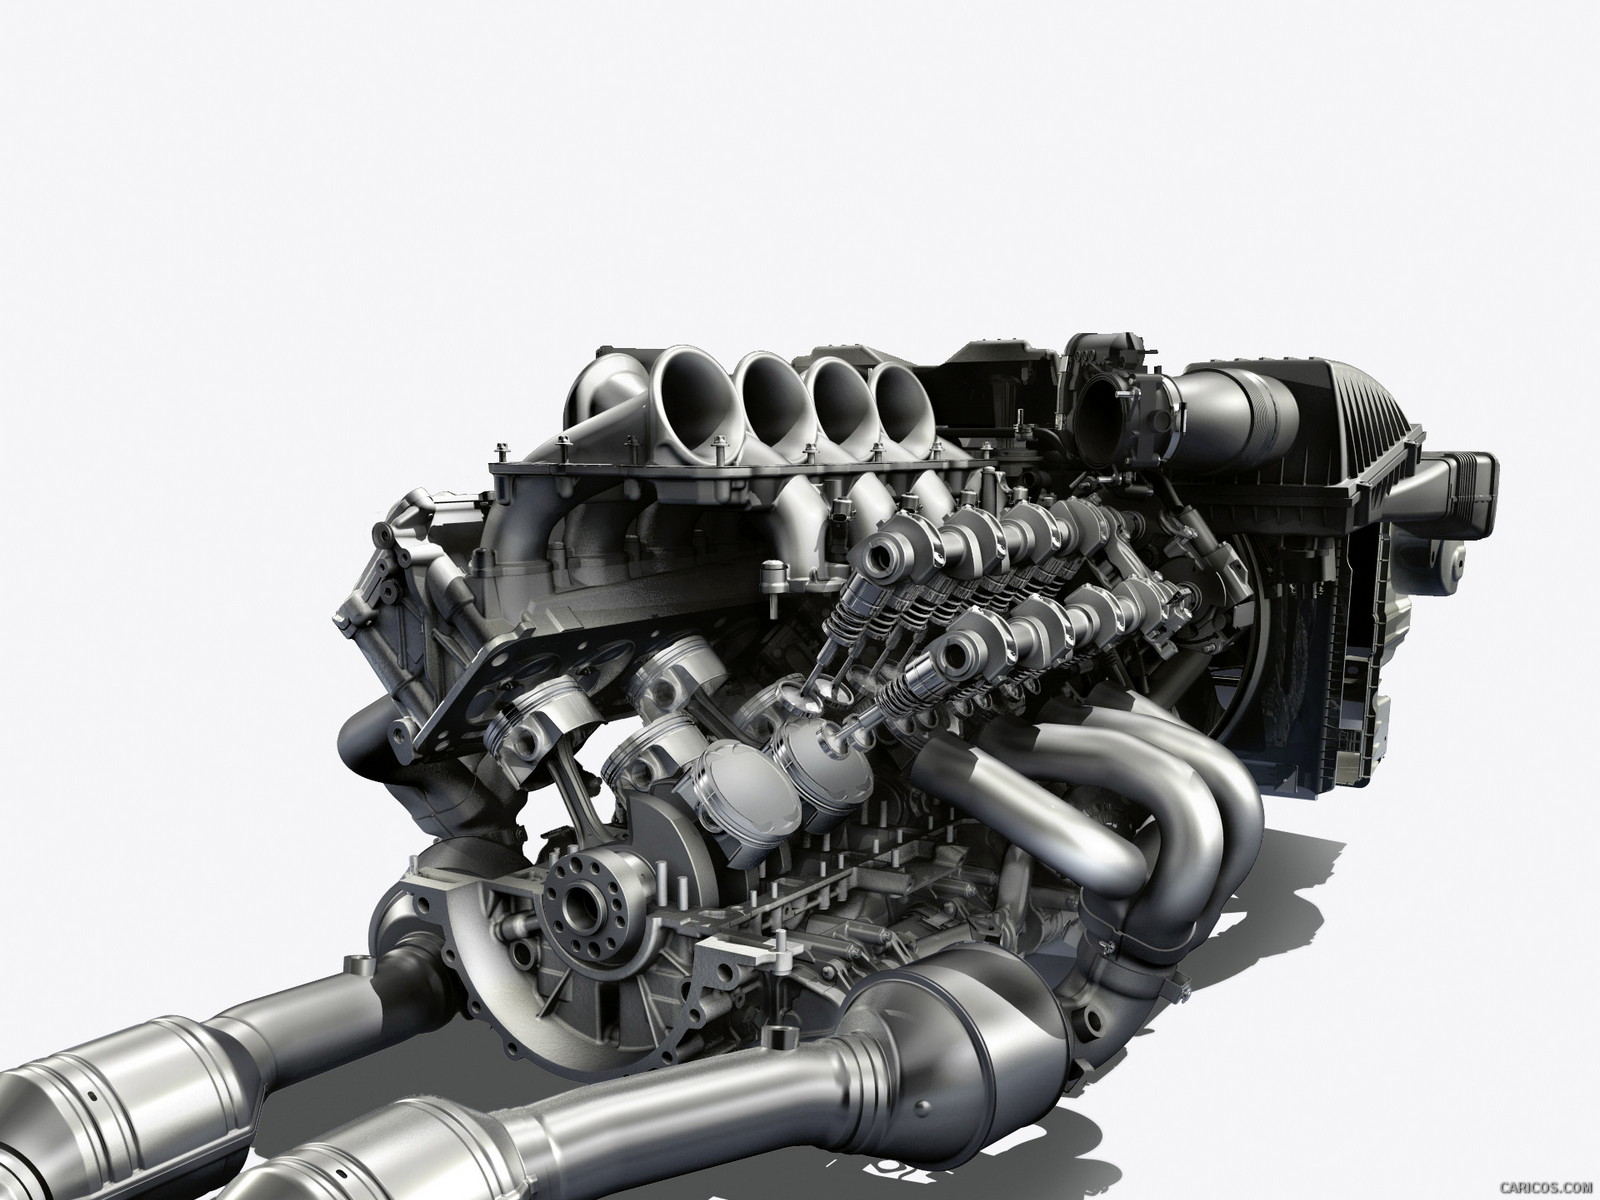 2012 Mercedes-Benz SLS AMG Roadster  - Engine, #106 of 129